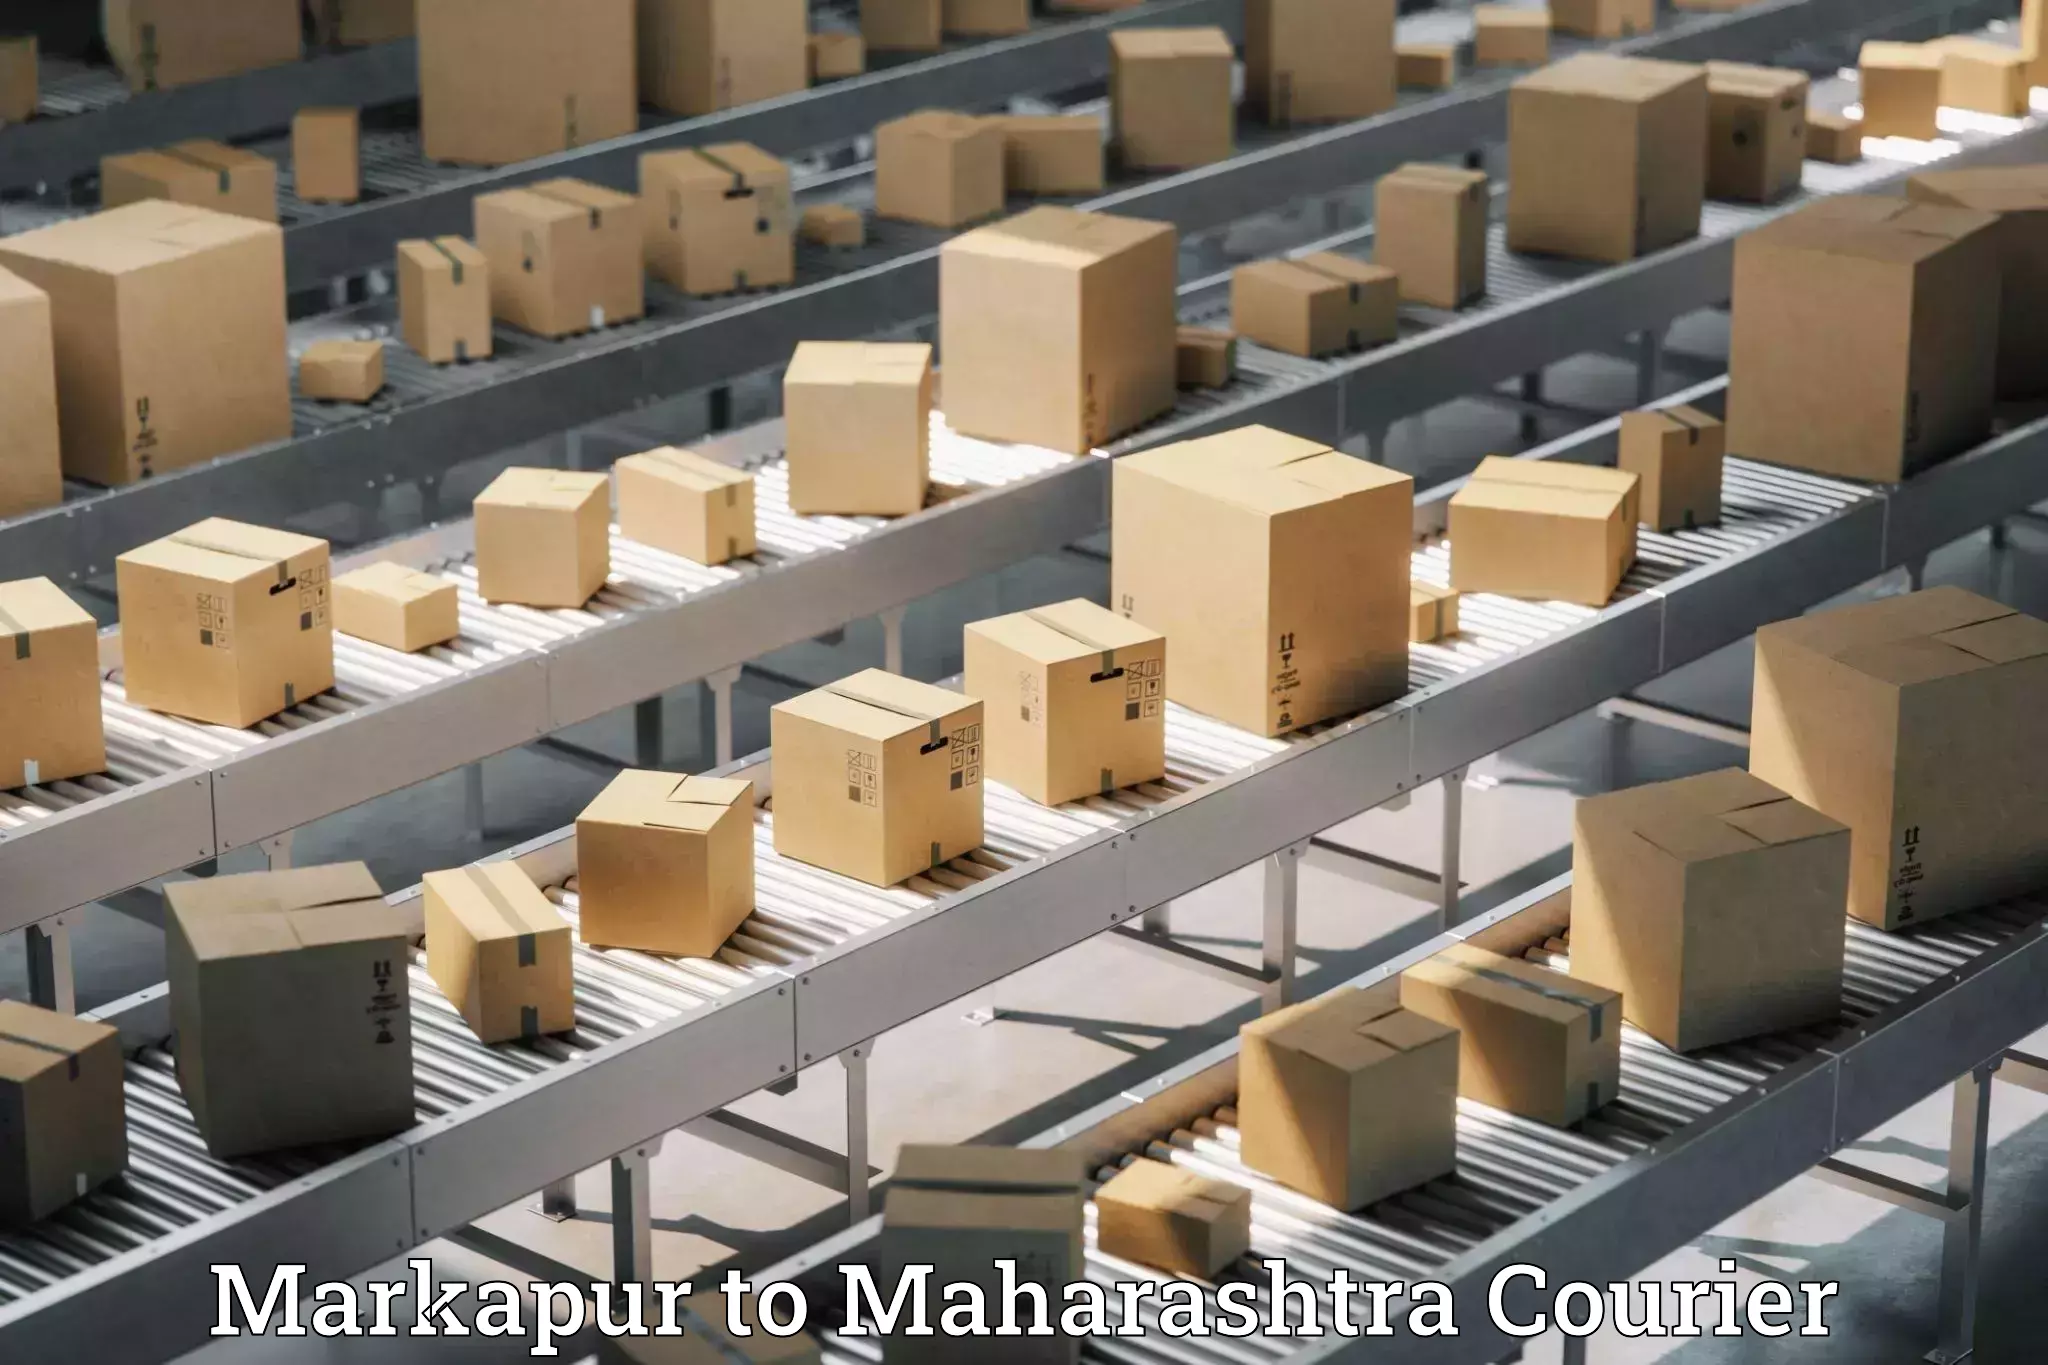 Courier service comparison Markapur to Vadgaon